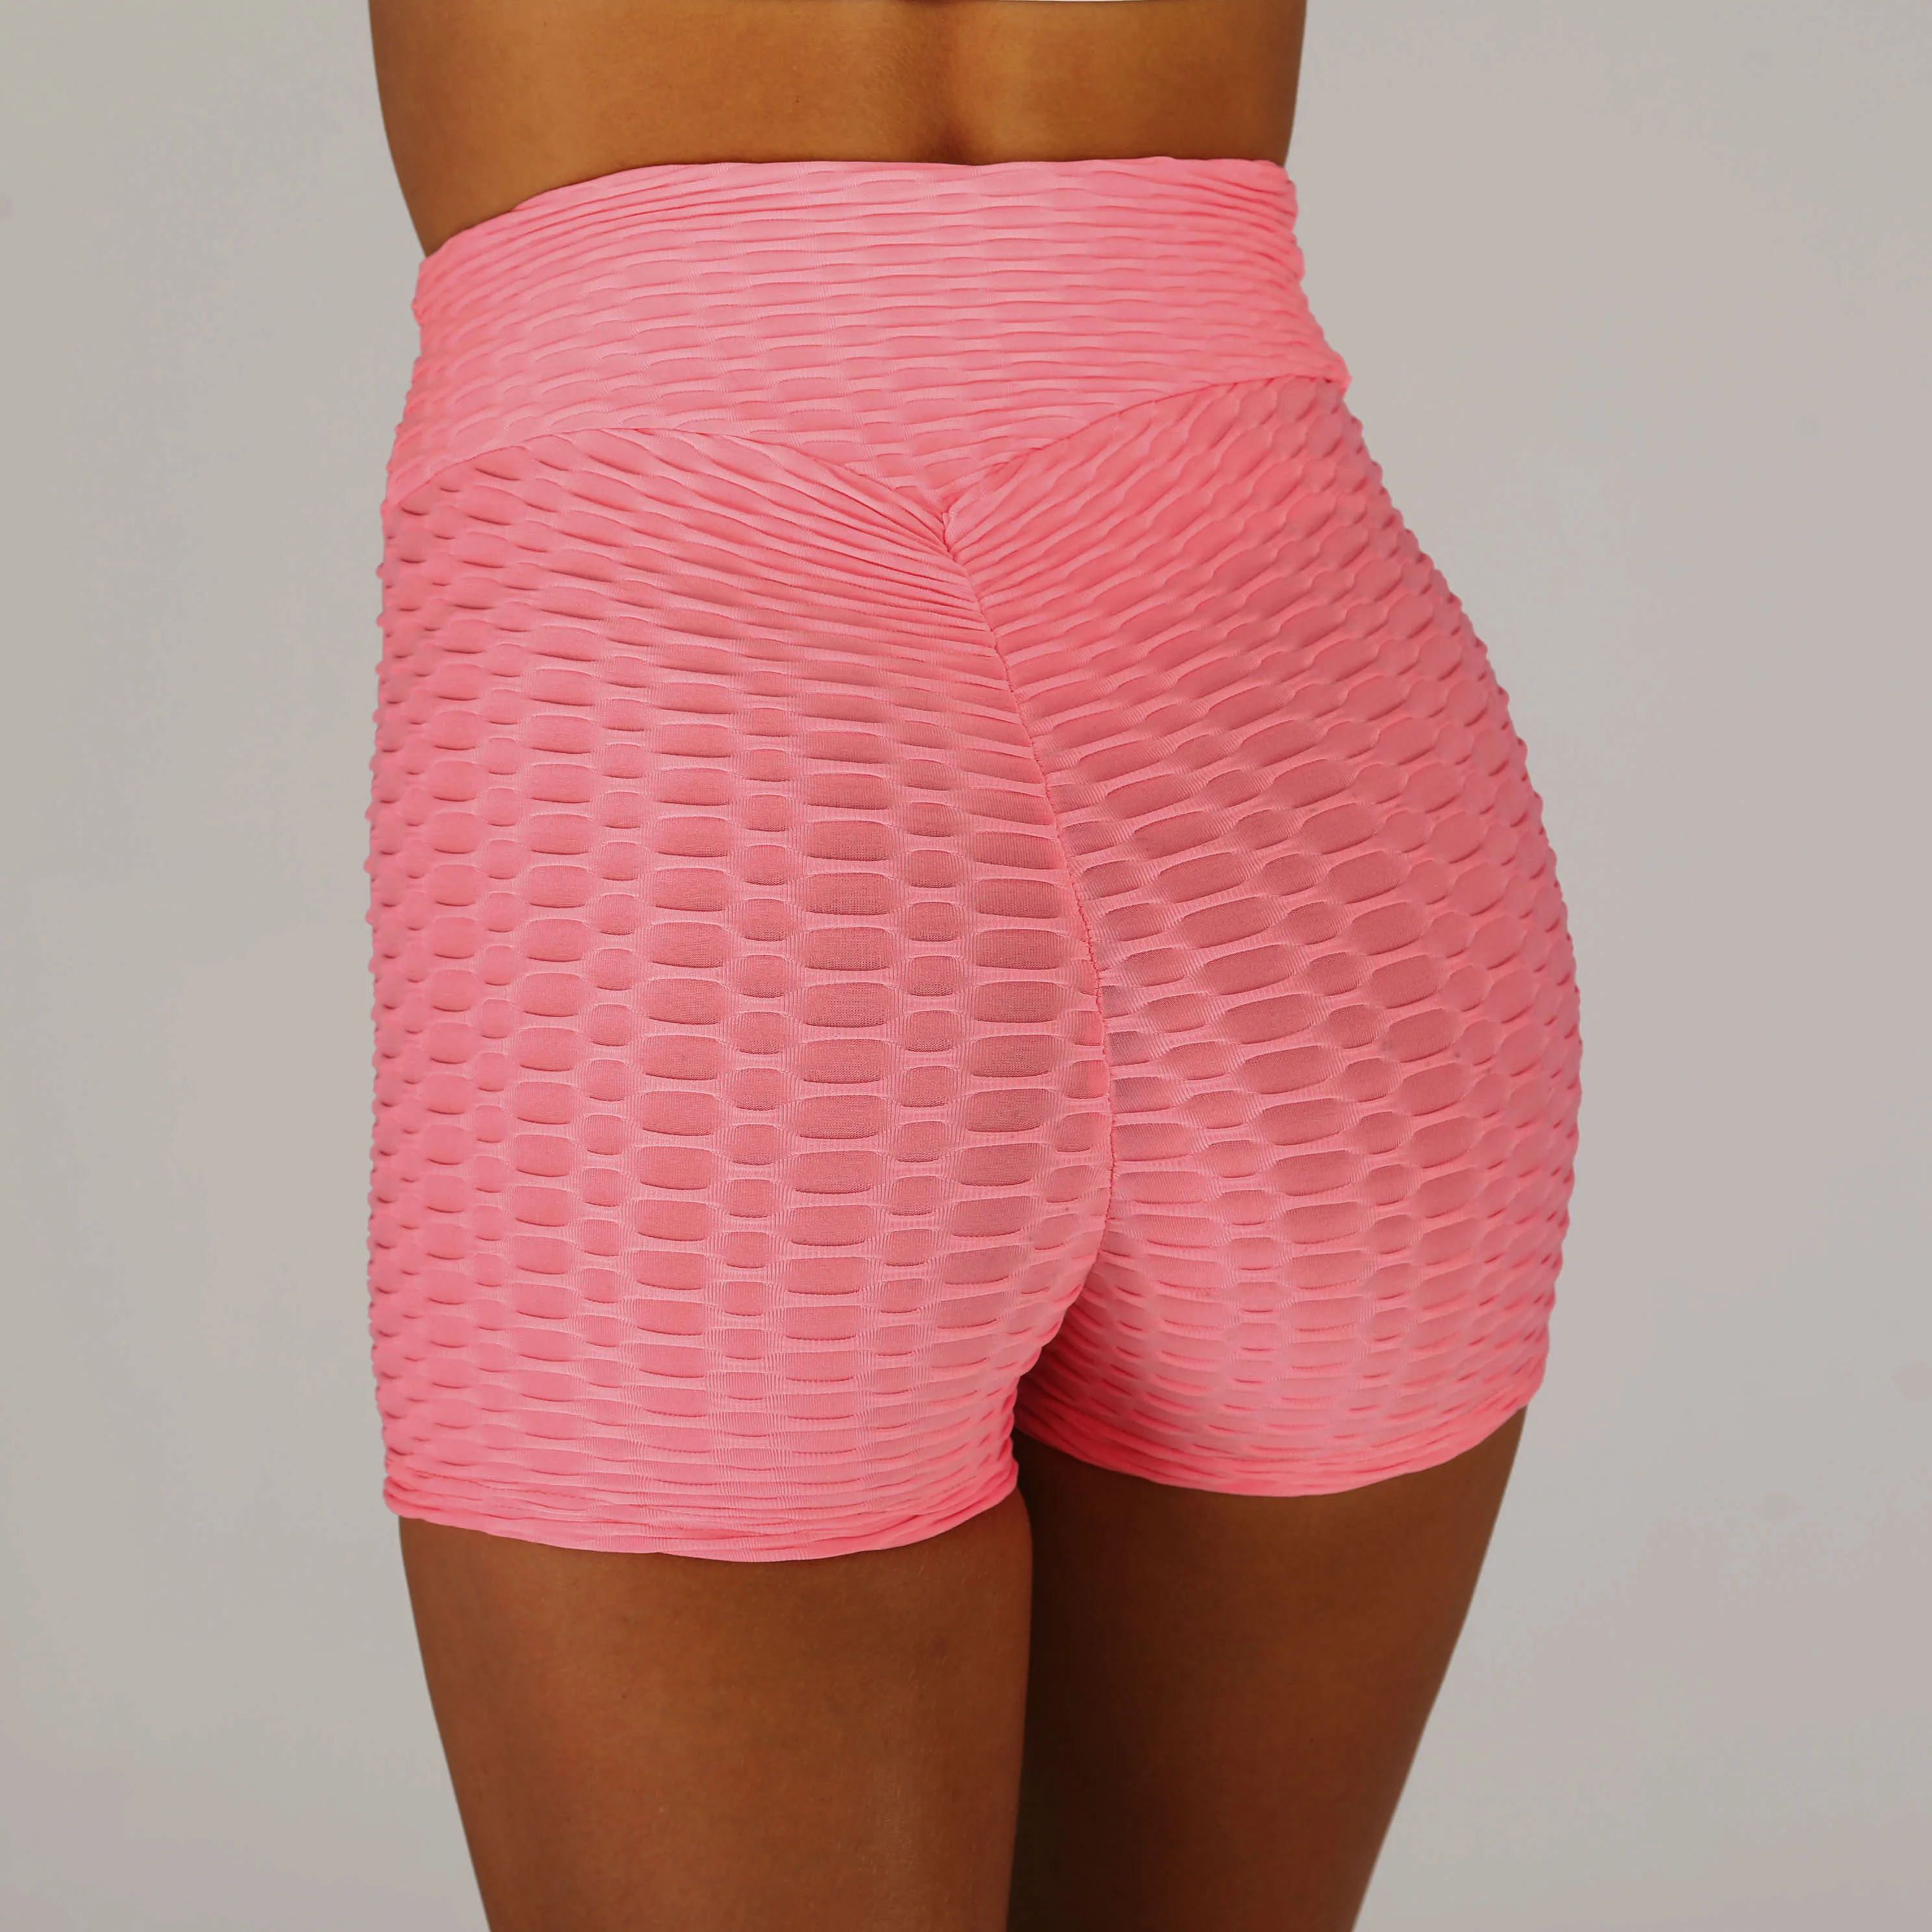 Новые шорты для фитнеса с антицеллюлитной текстурой, Женские однотонные шорты с высокой талией, эластичные розовые шорты для тренировок